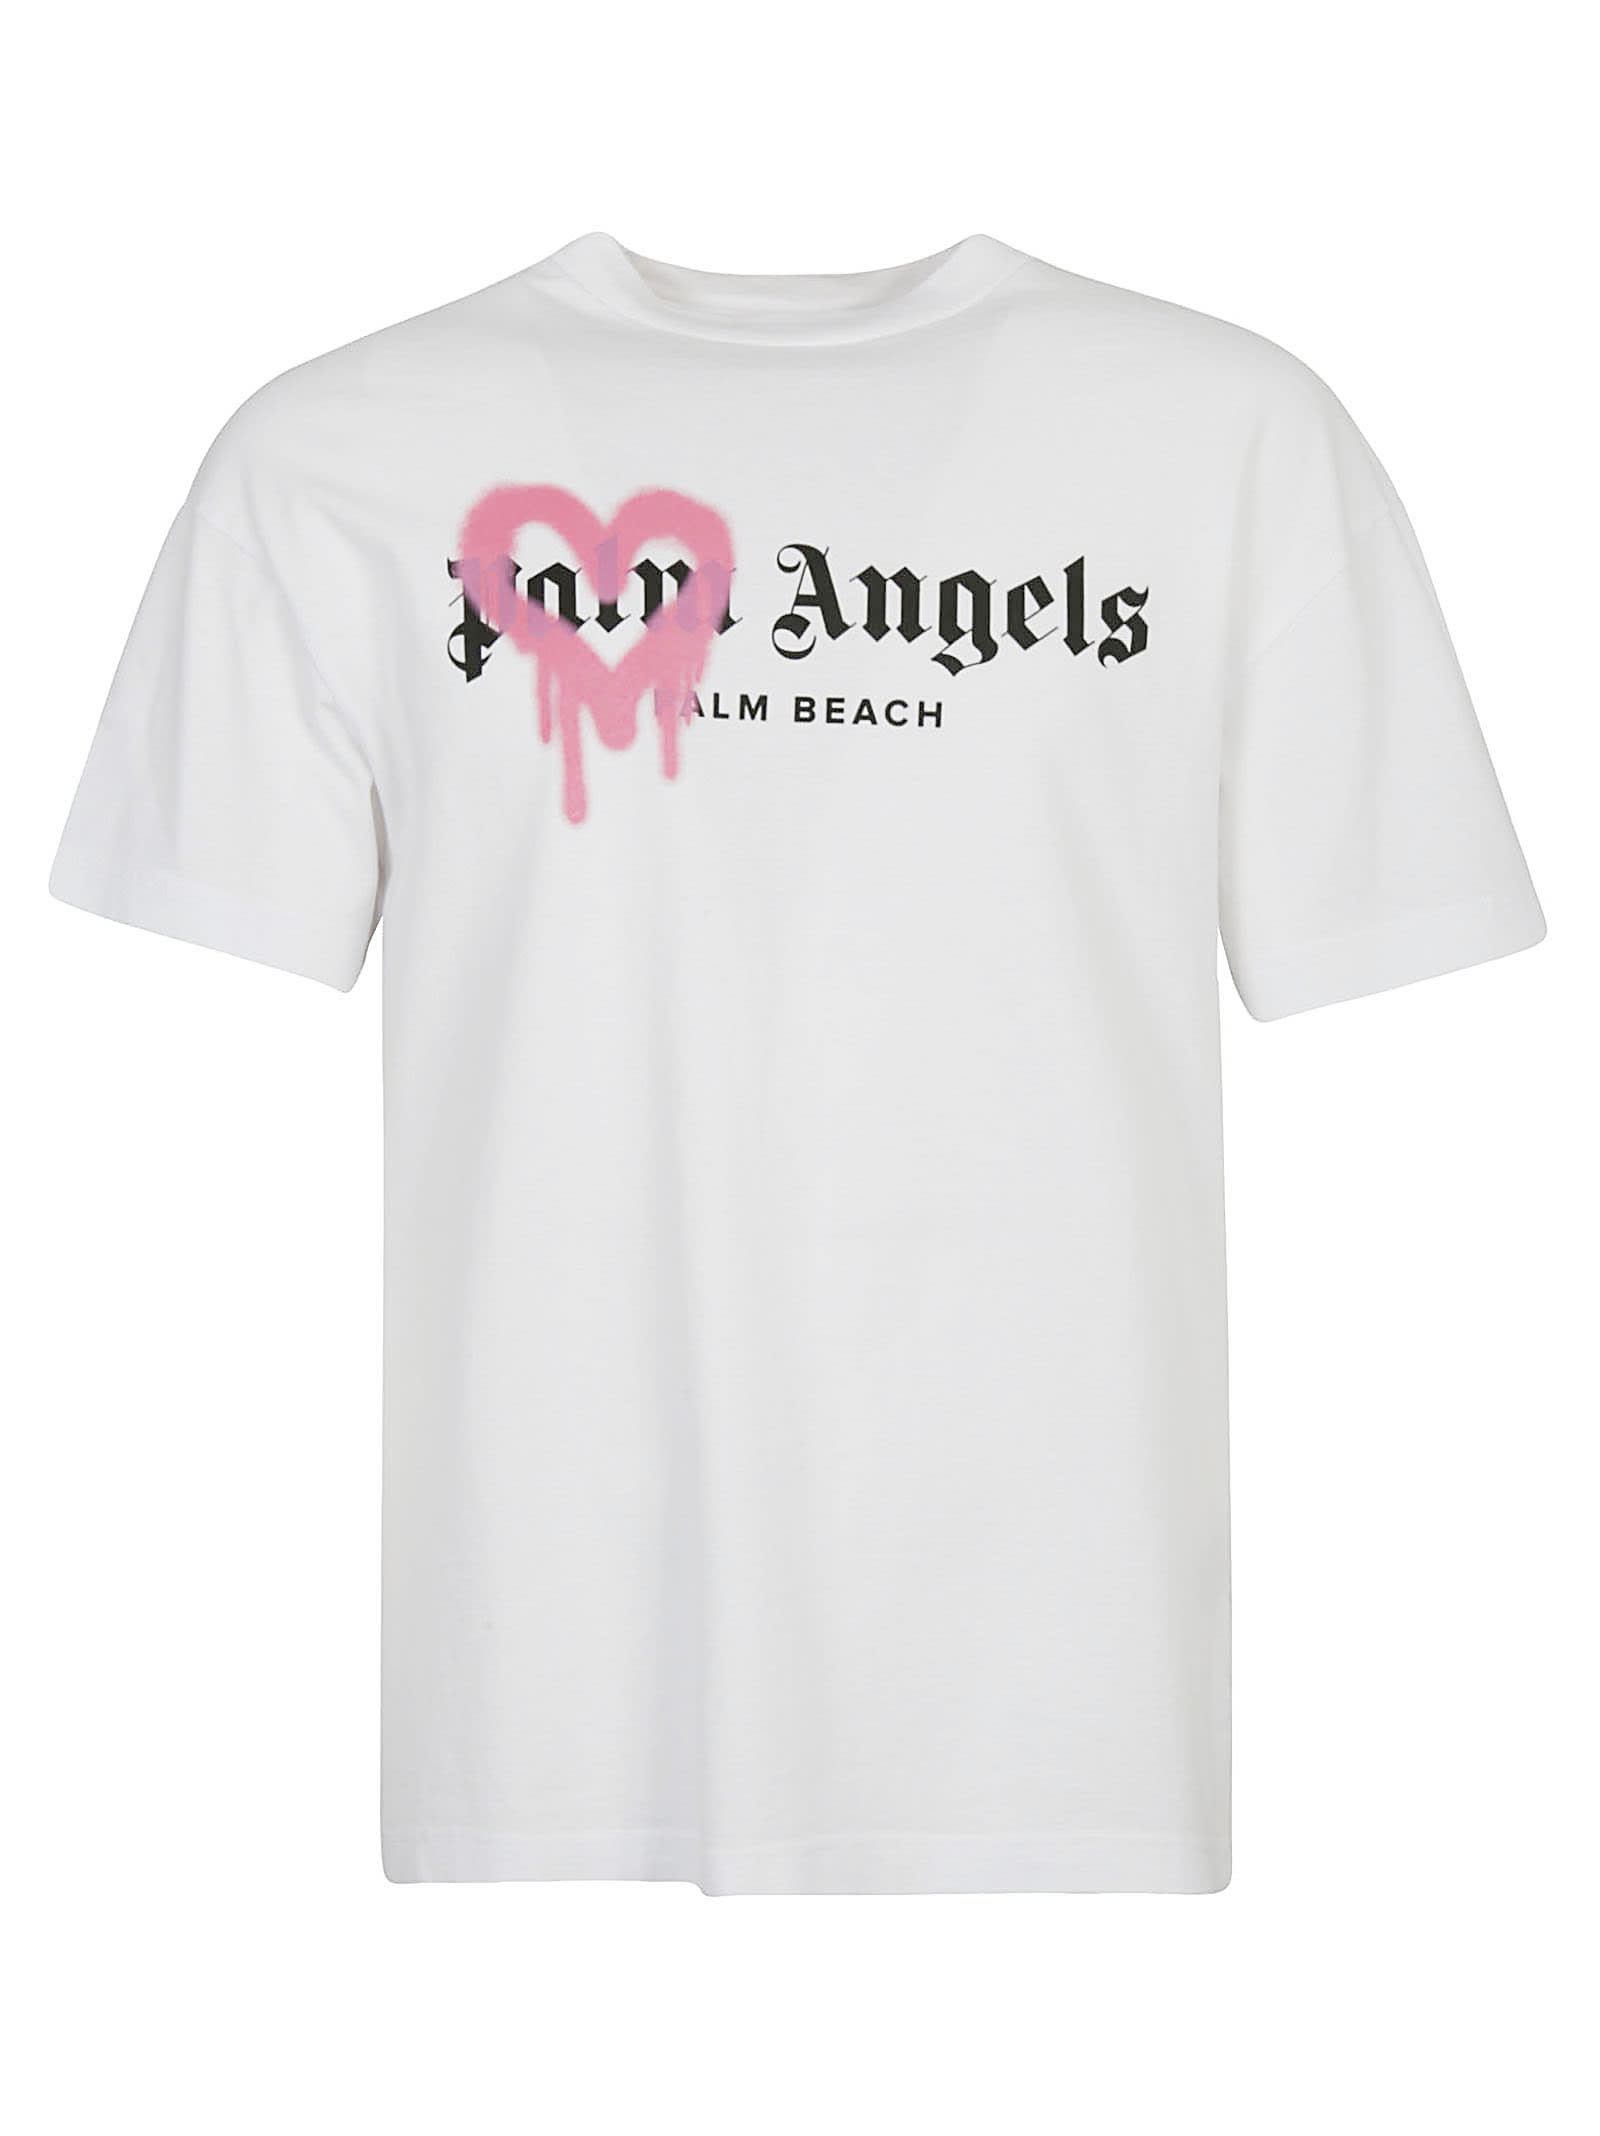 Palm Angels Pam Beach Sprayed T-shirt